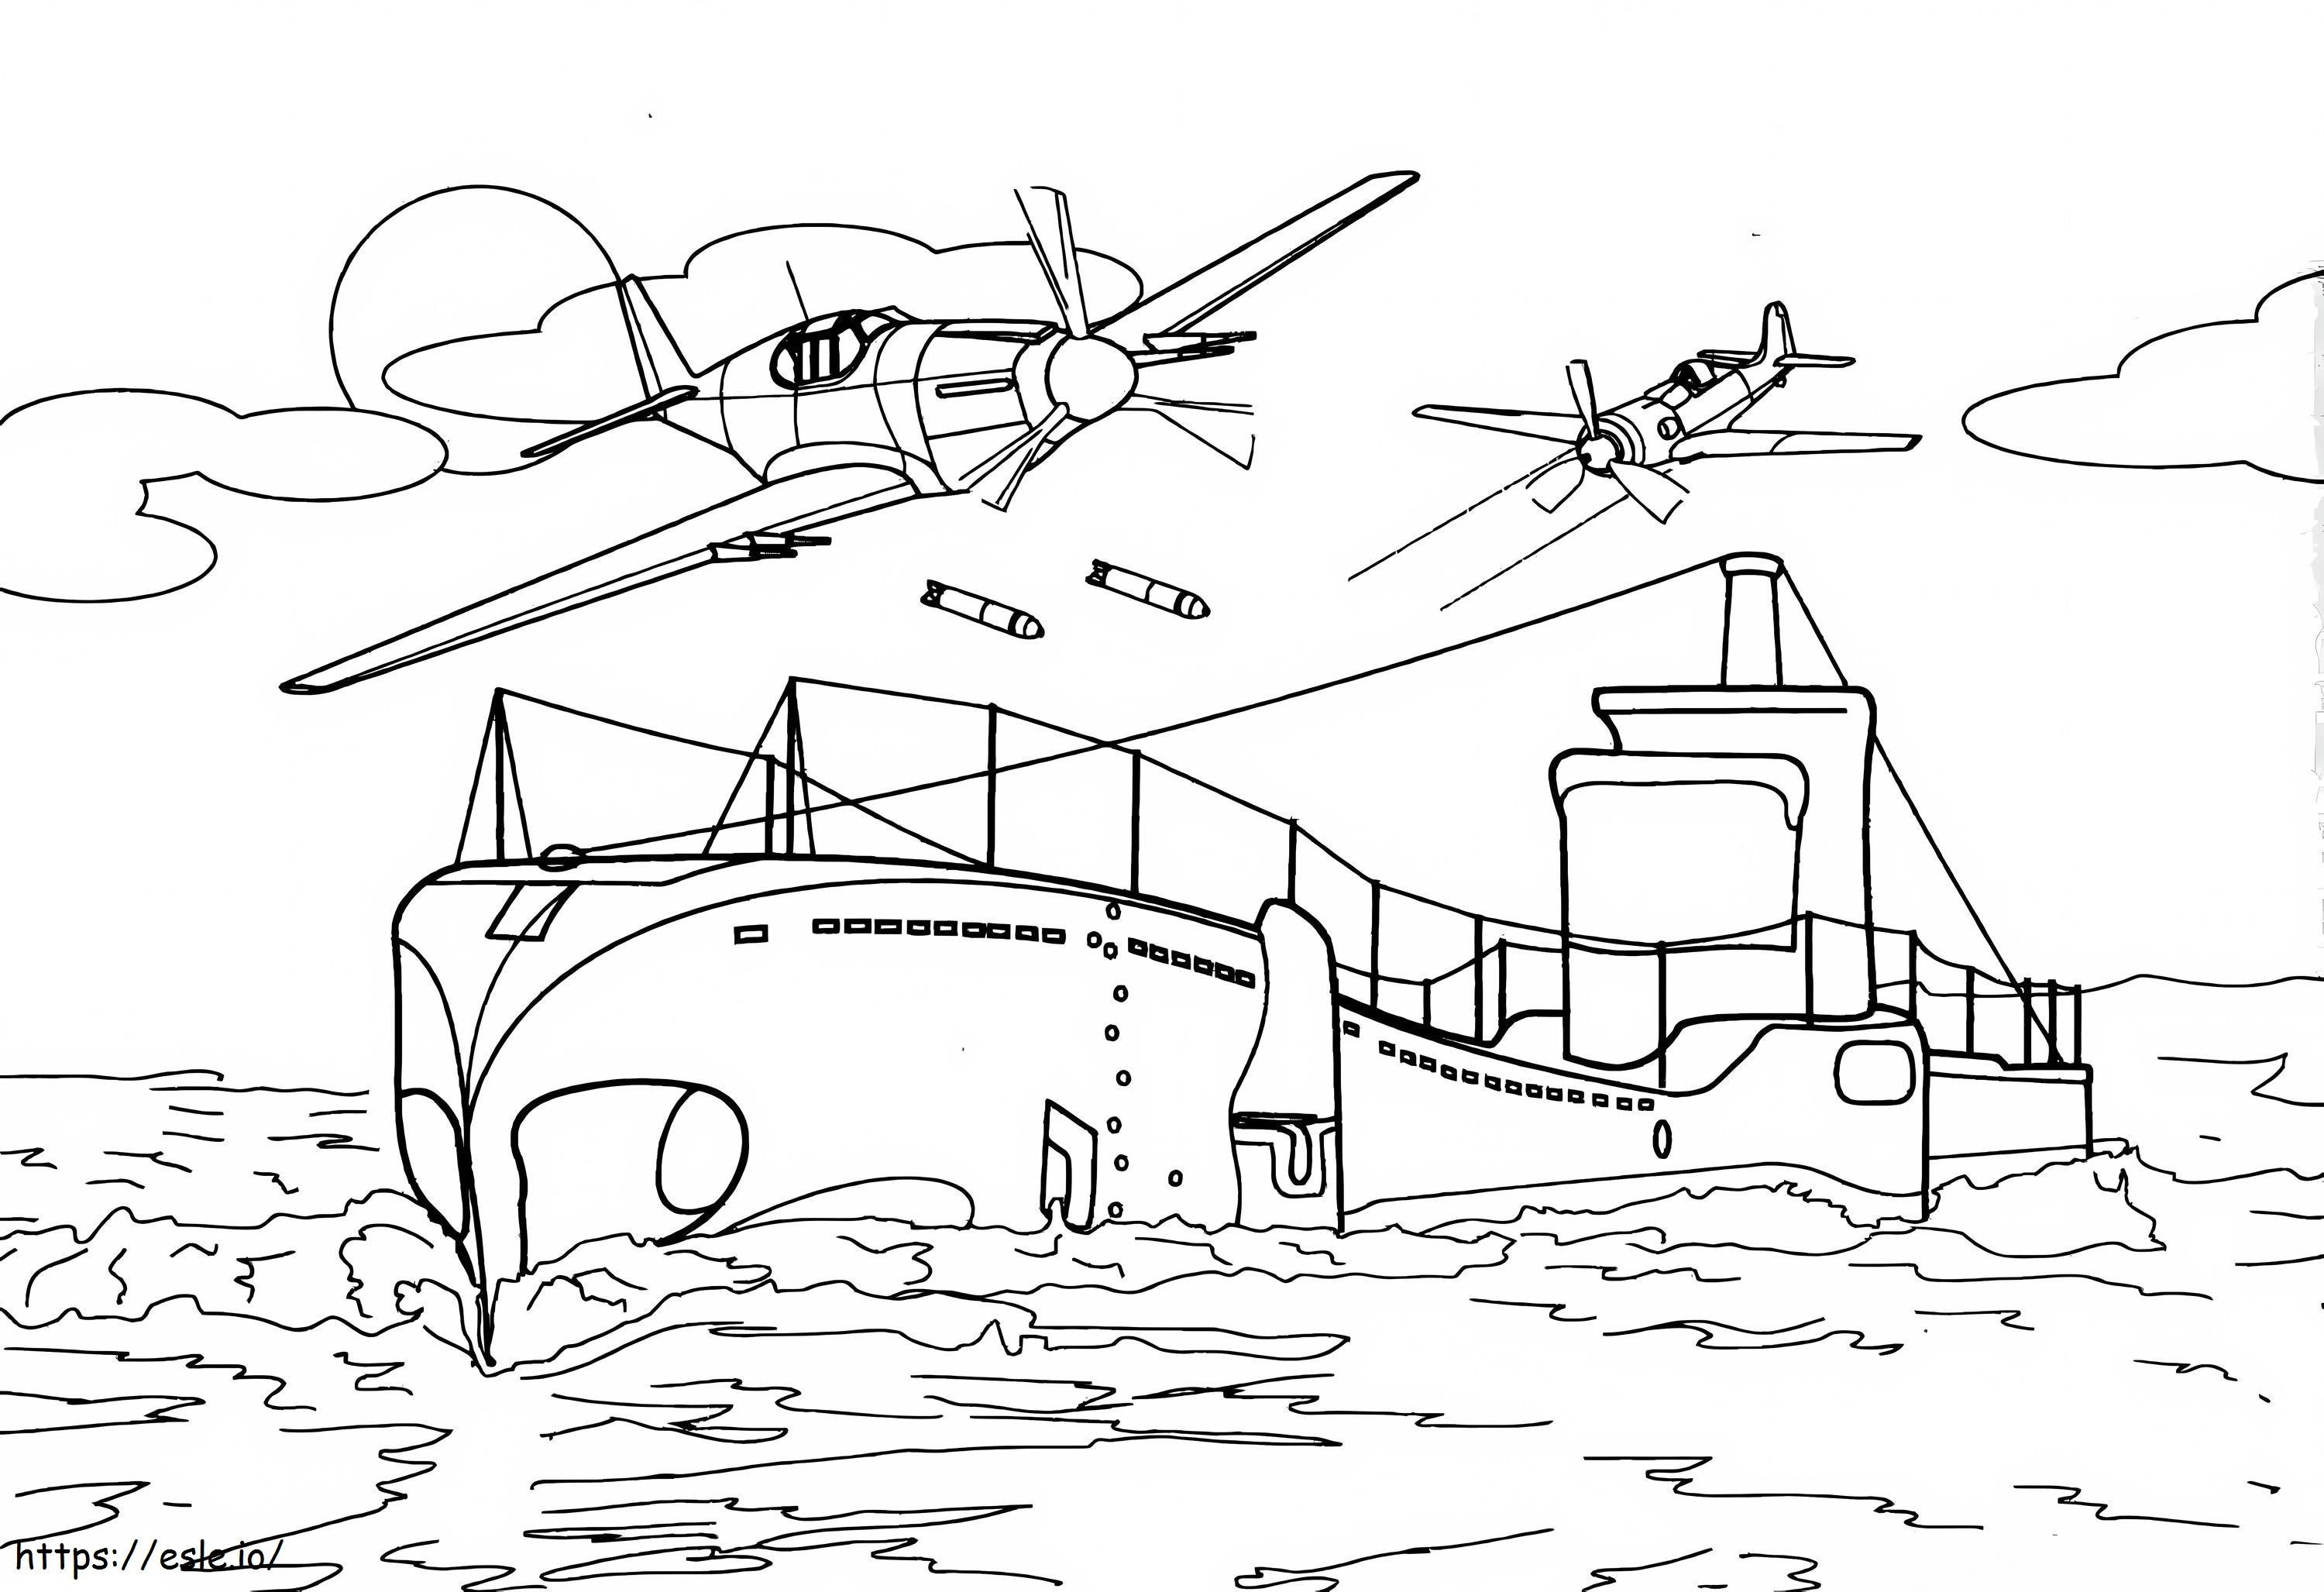 Submarin și două elicoptere de colorat